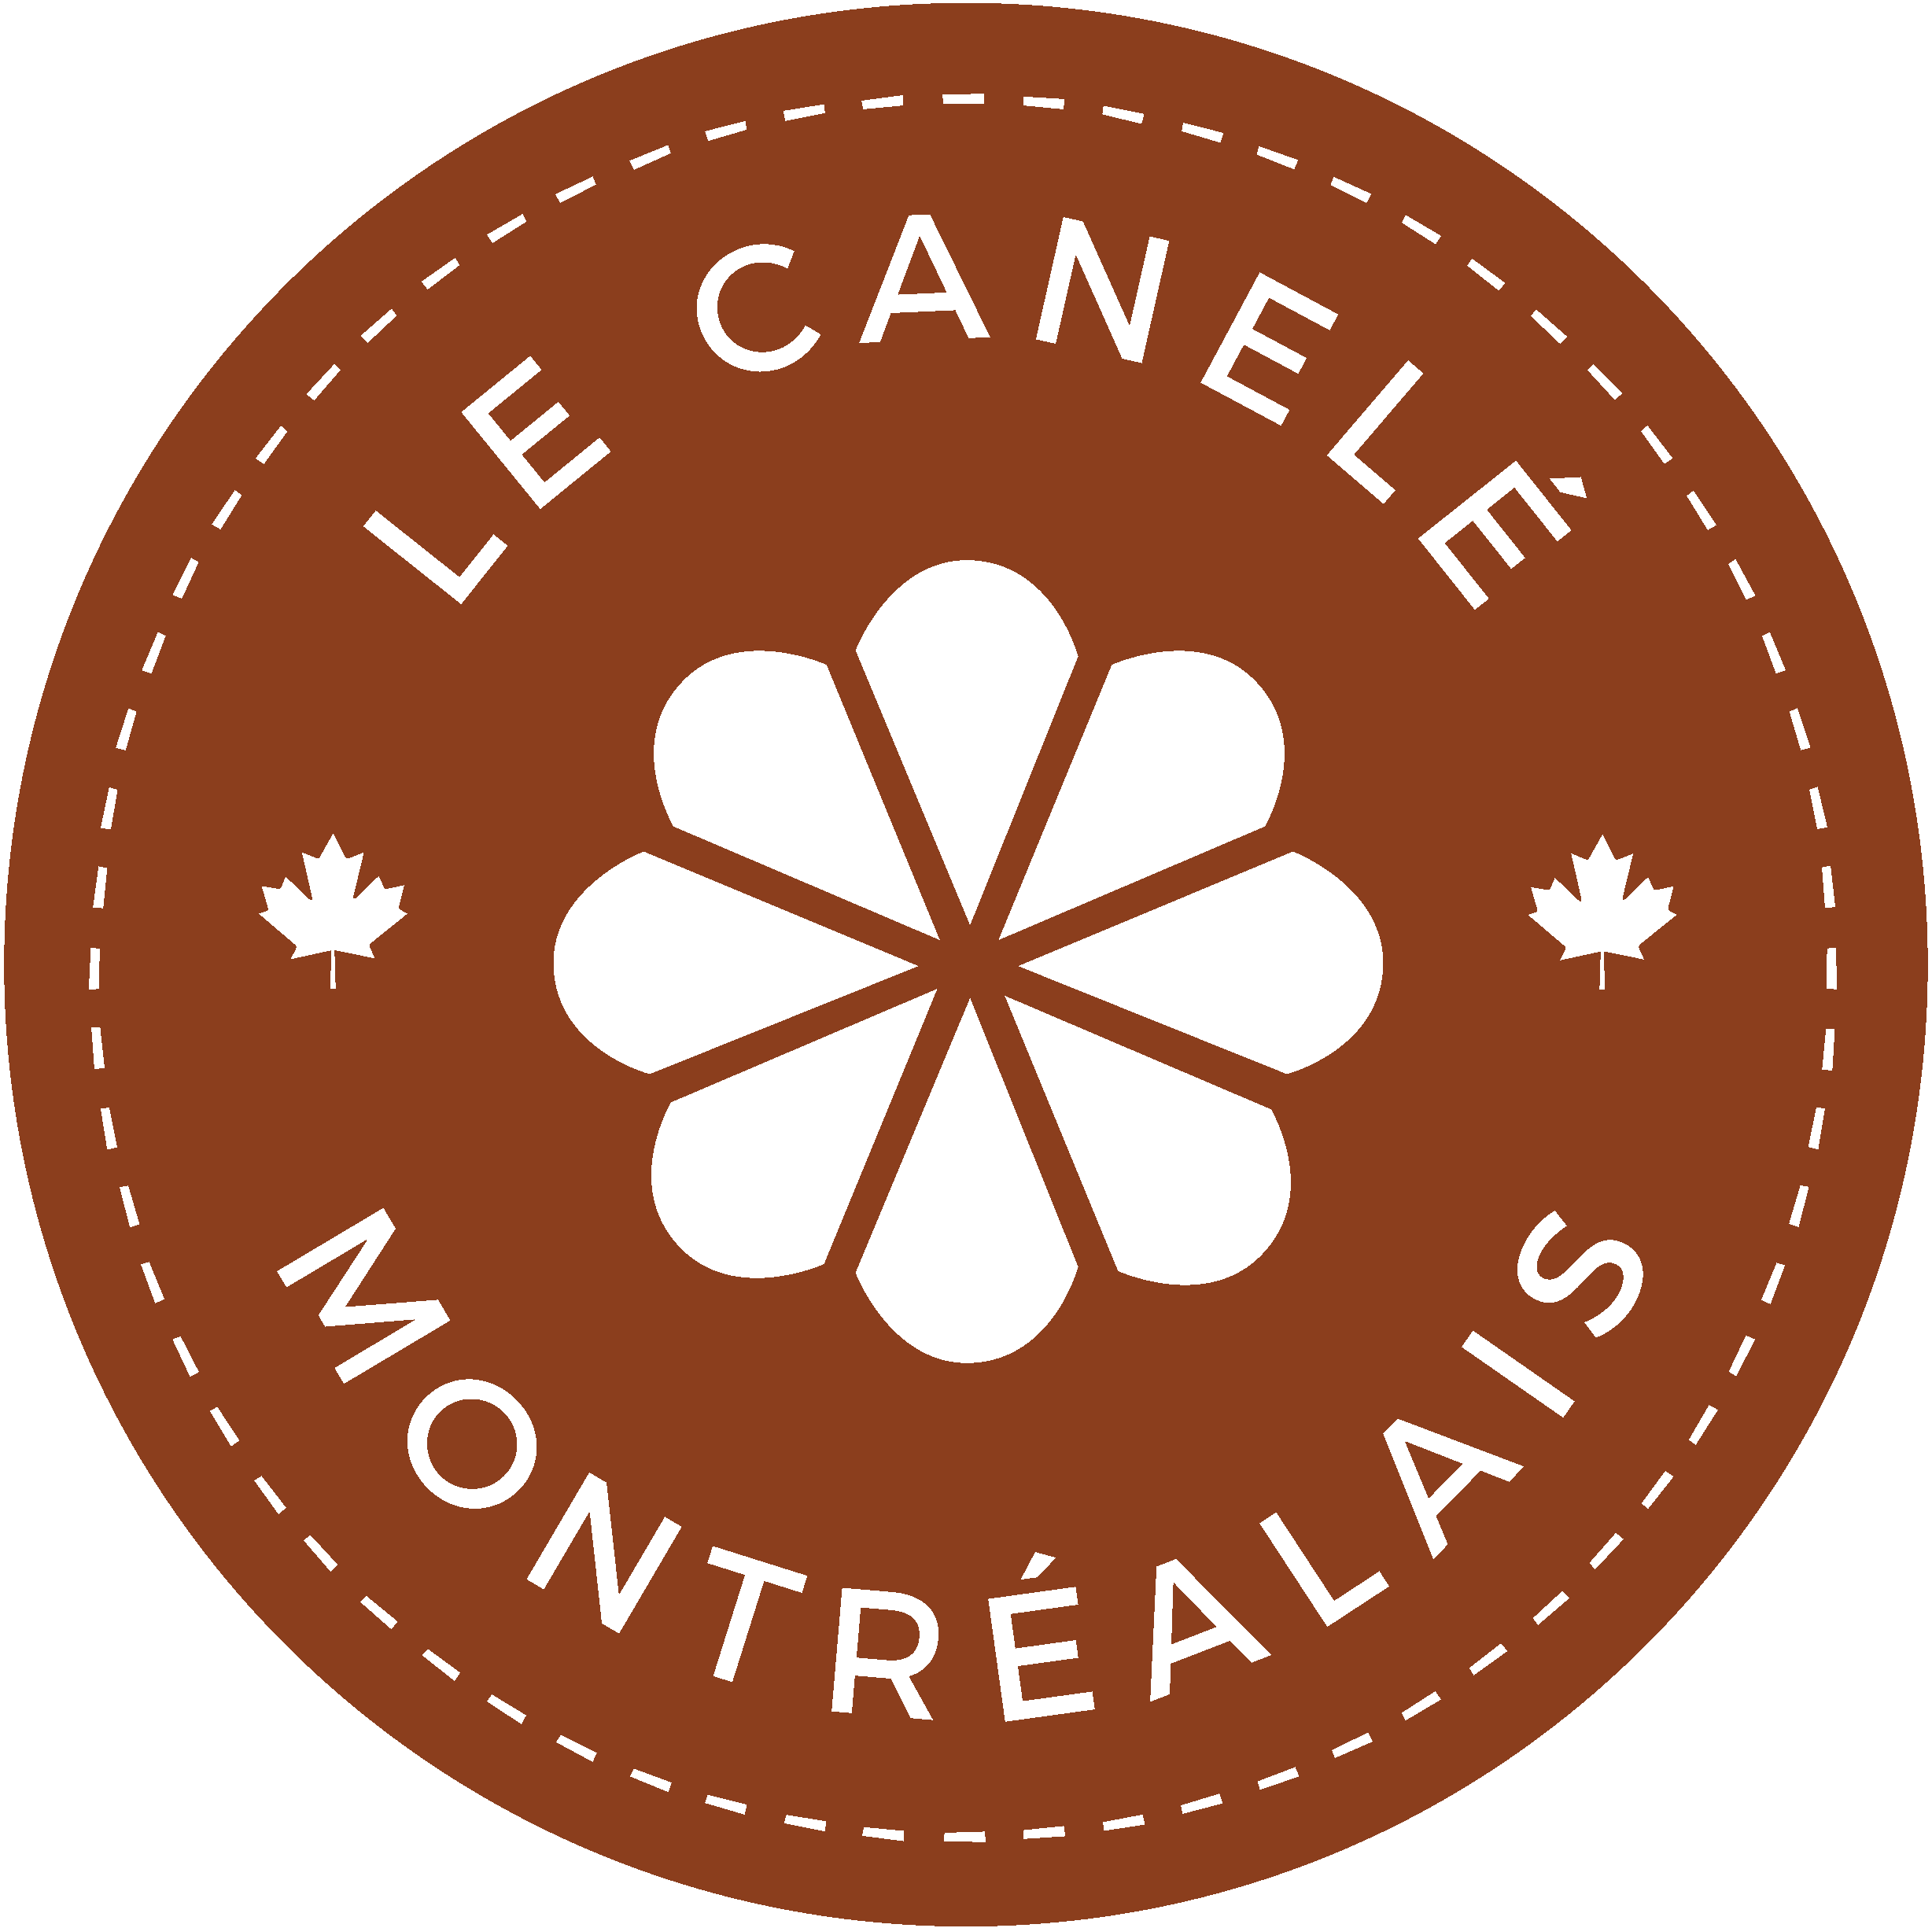 Le Canelé Montréalais